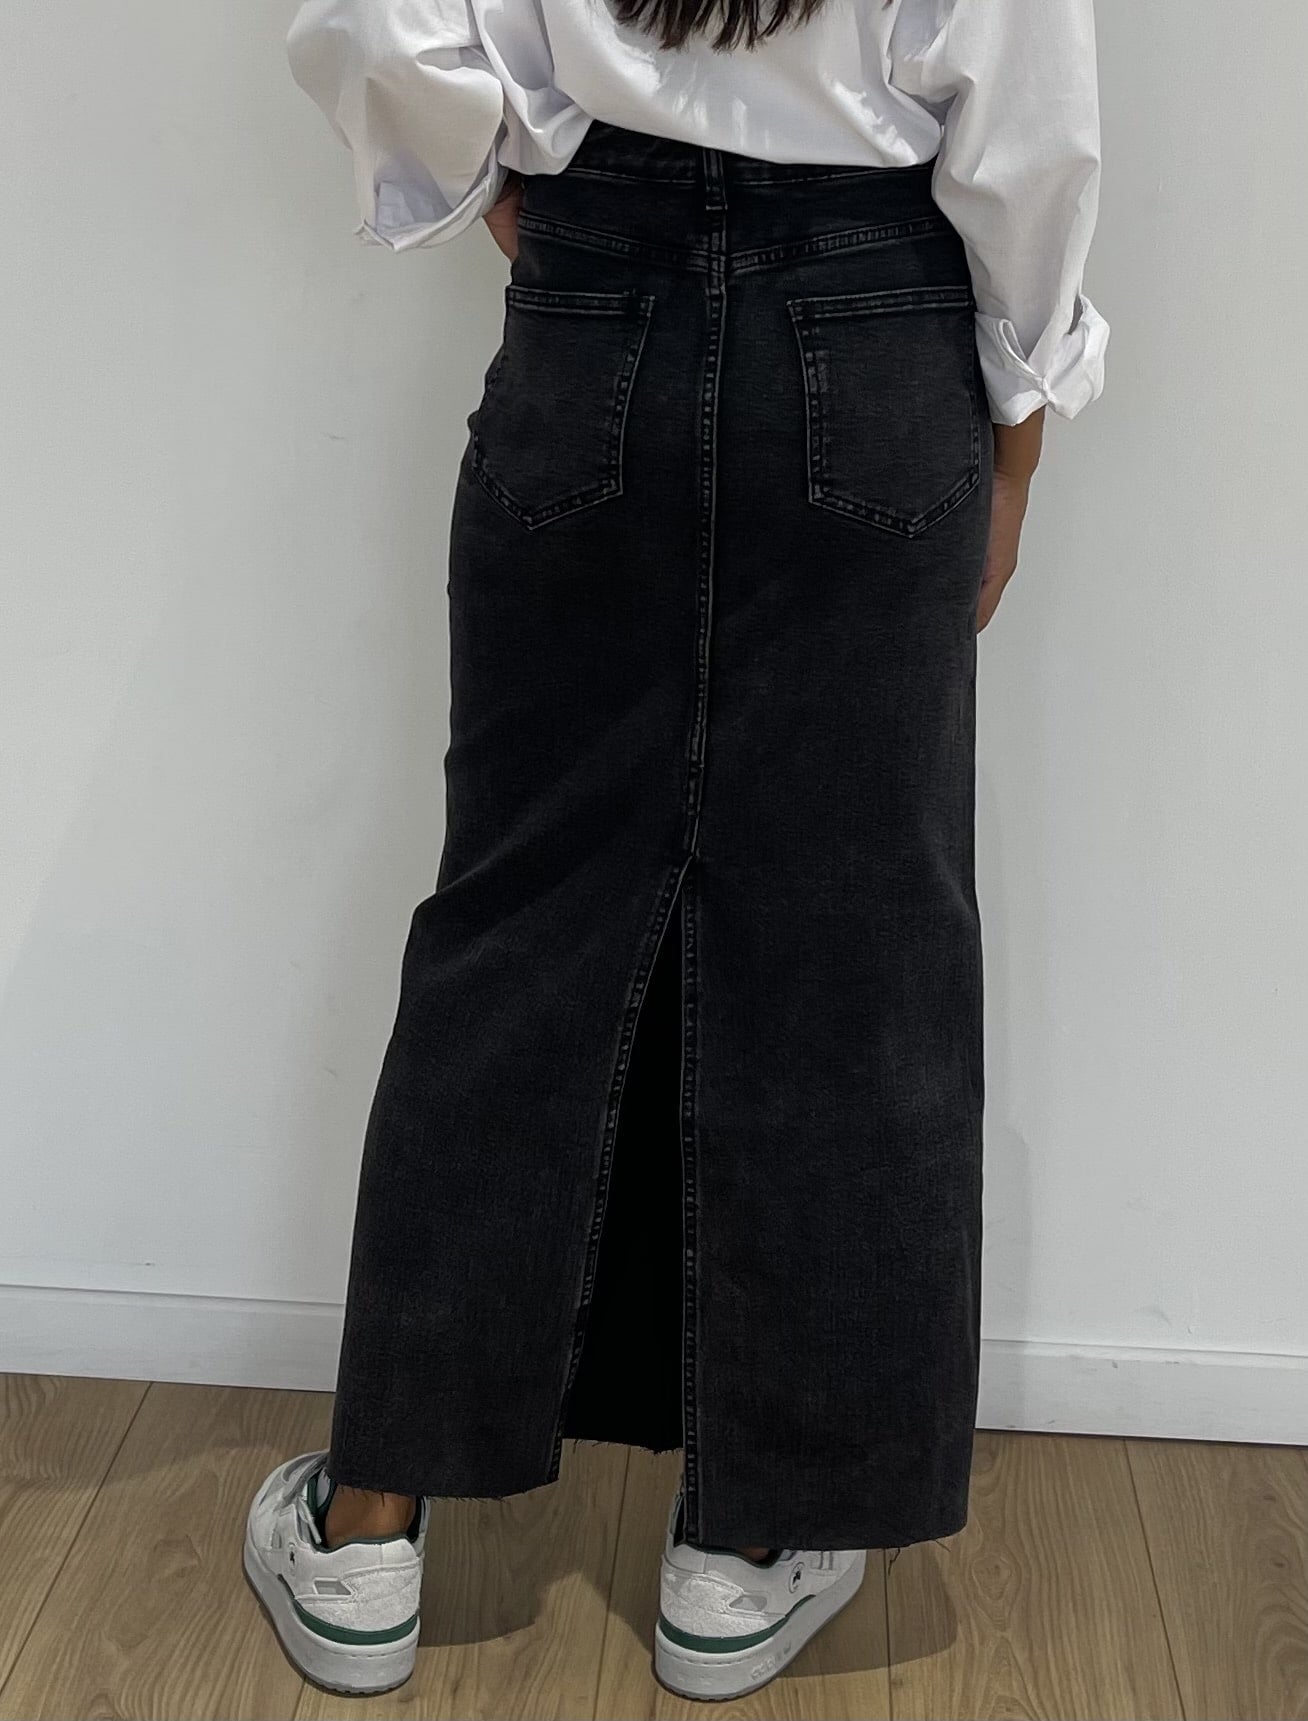 Jupe longue noire en jean avec fente avant pour un style audacieux